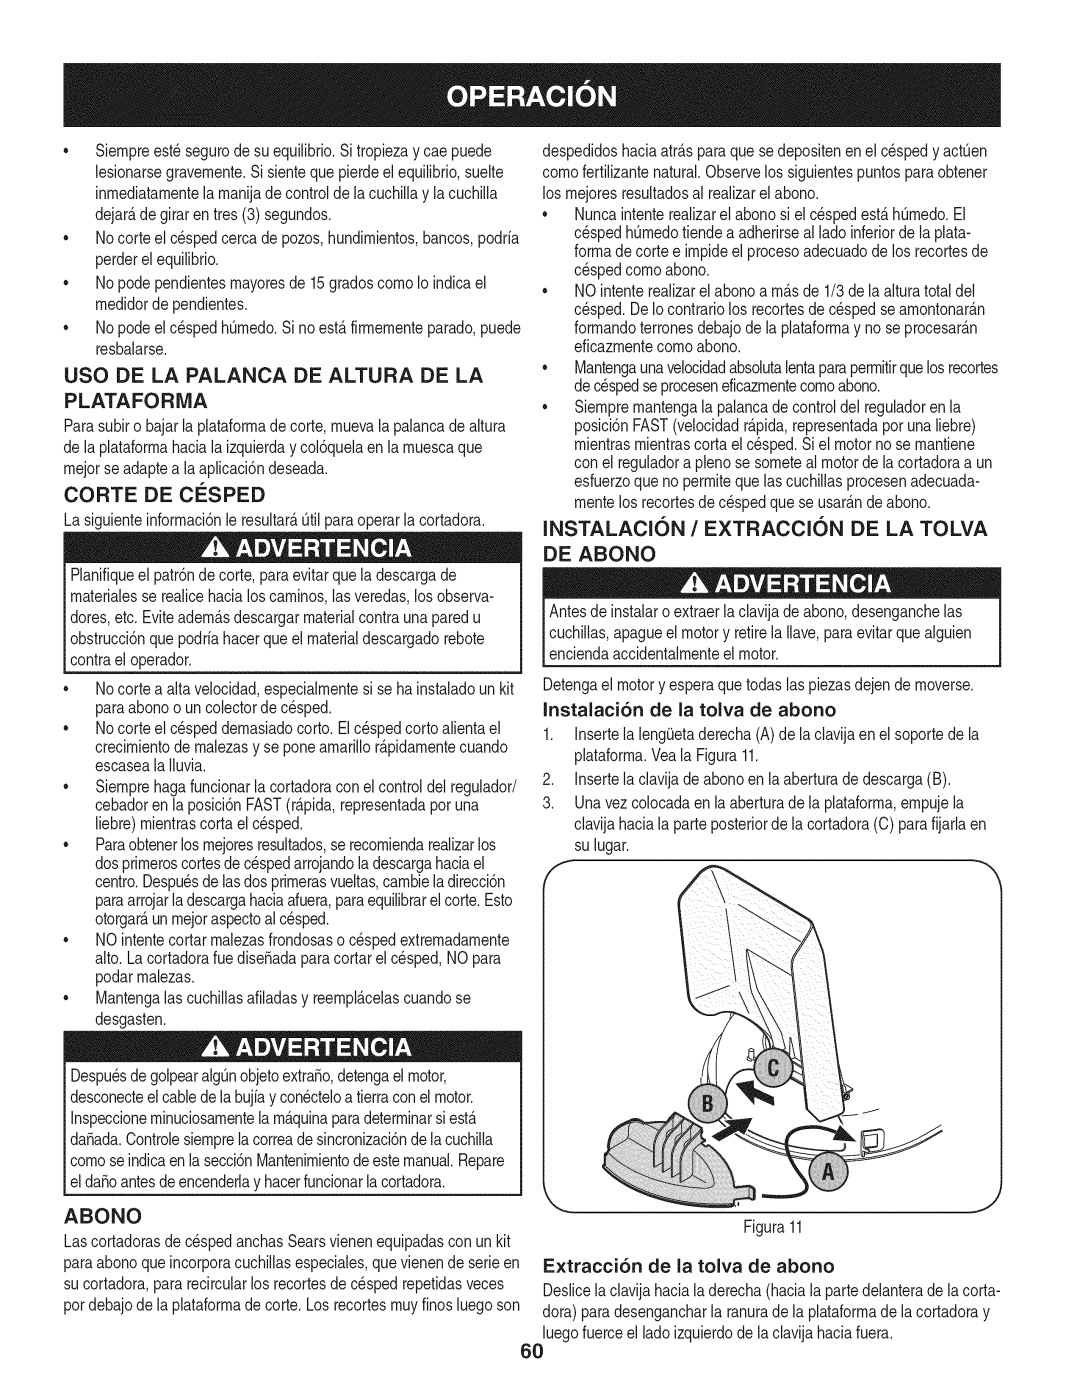 Craftsman 247.889980 manual Uso De La Palanca De Altura De La Plataforma, CORTE DE ClaSPED, De Abono 